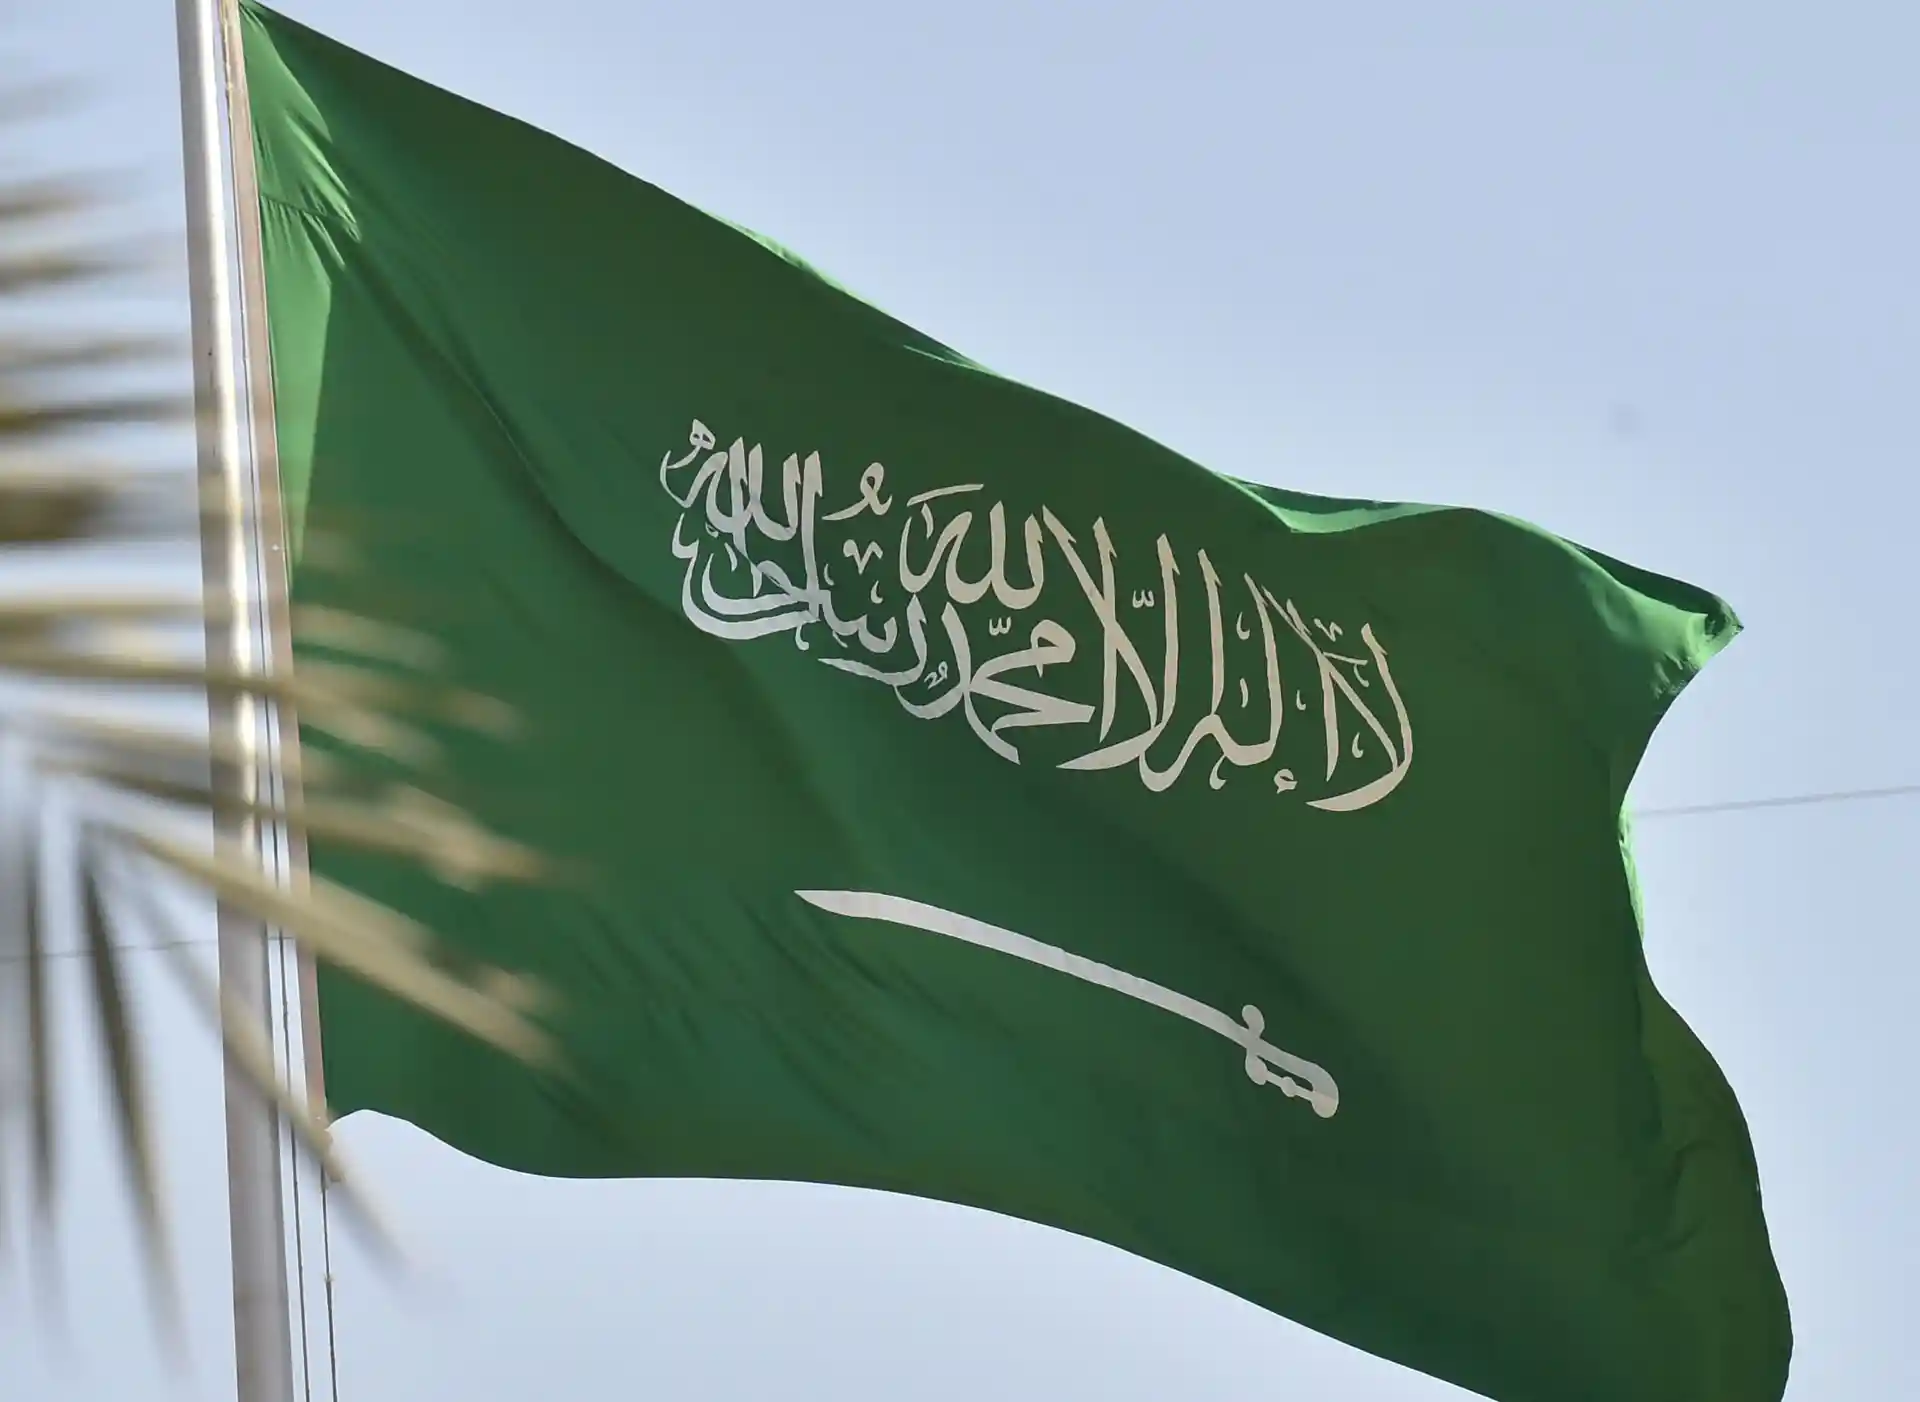 السعودية تعدّل علمها.. ما الذي تغيّر فيه؟ (صورة)